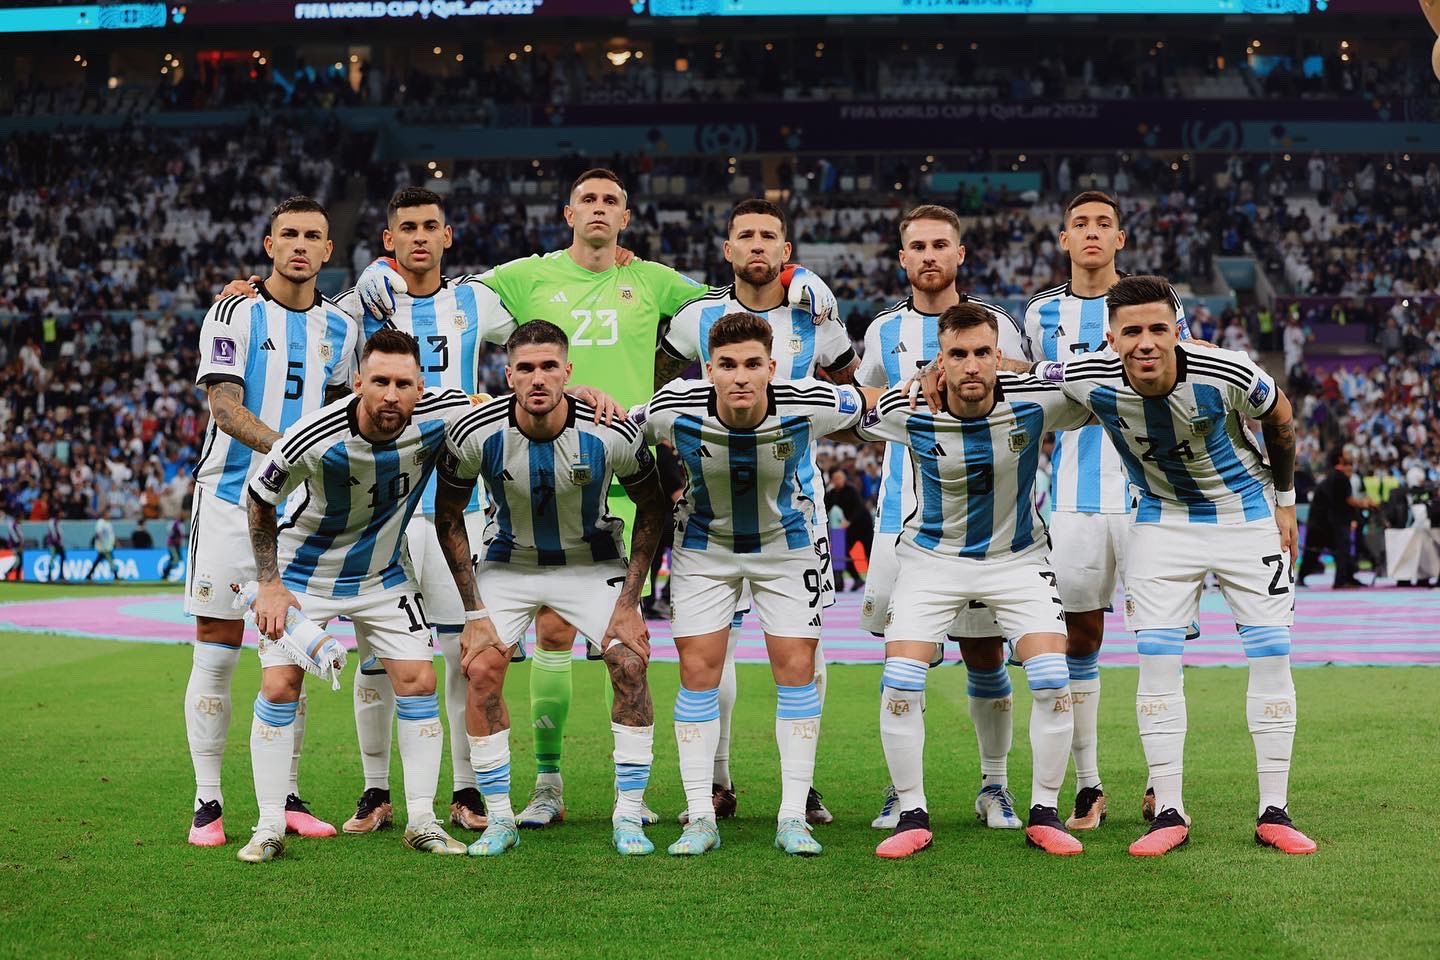 Argentina jugó un partido bárbaro, y asi se calificó a cada jugador: Messi 10; Alvarez 10